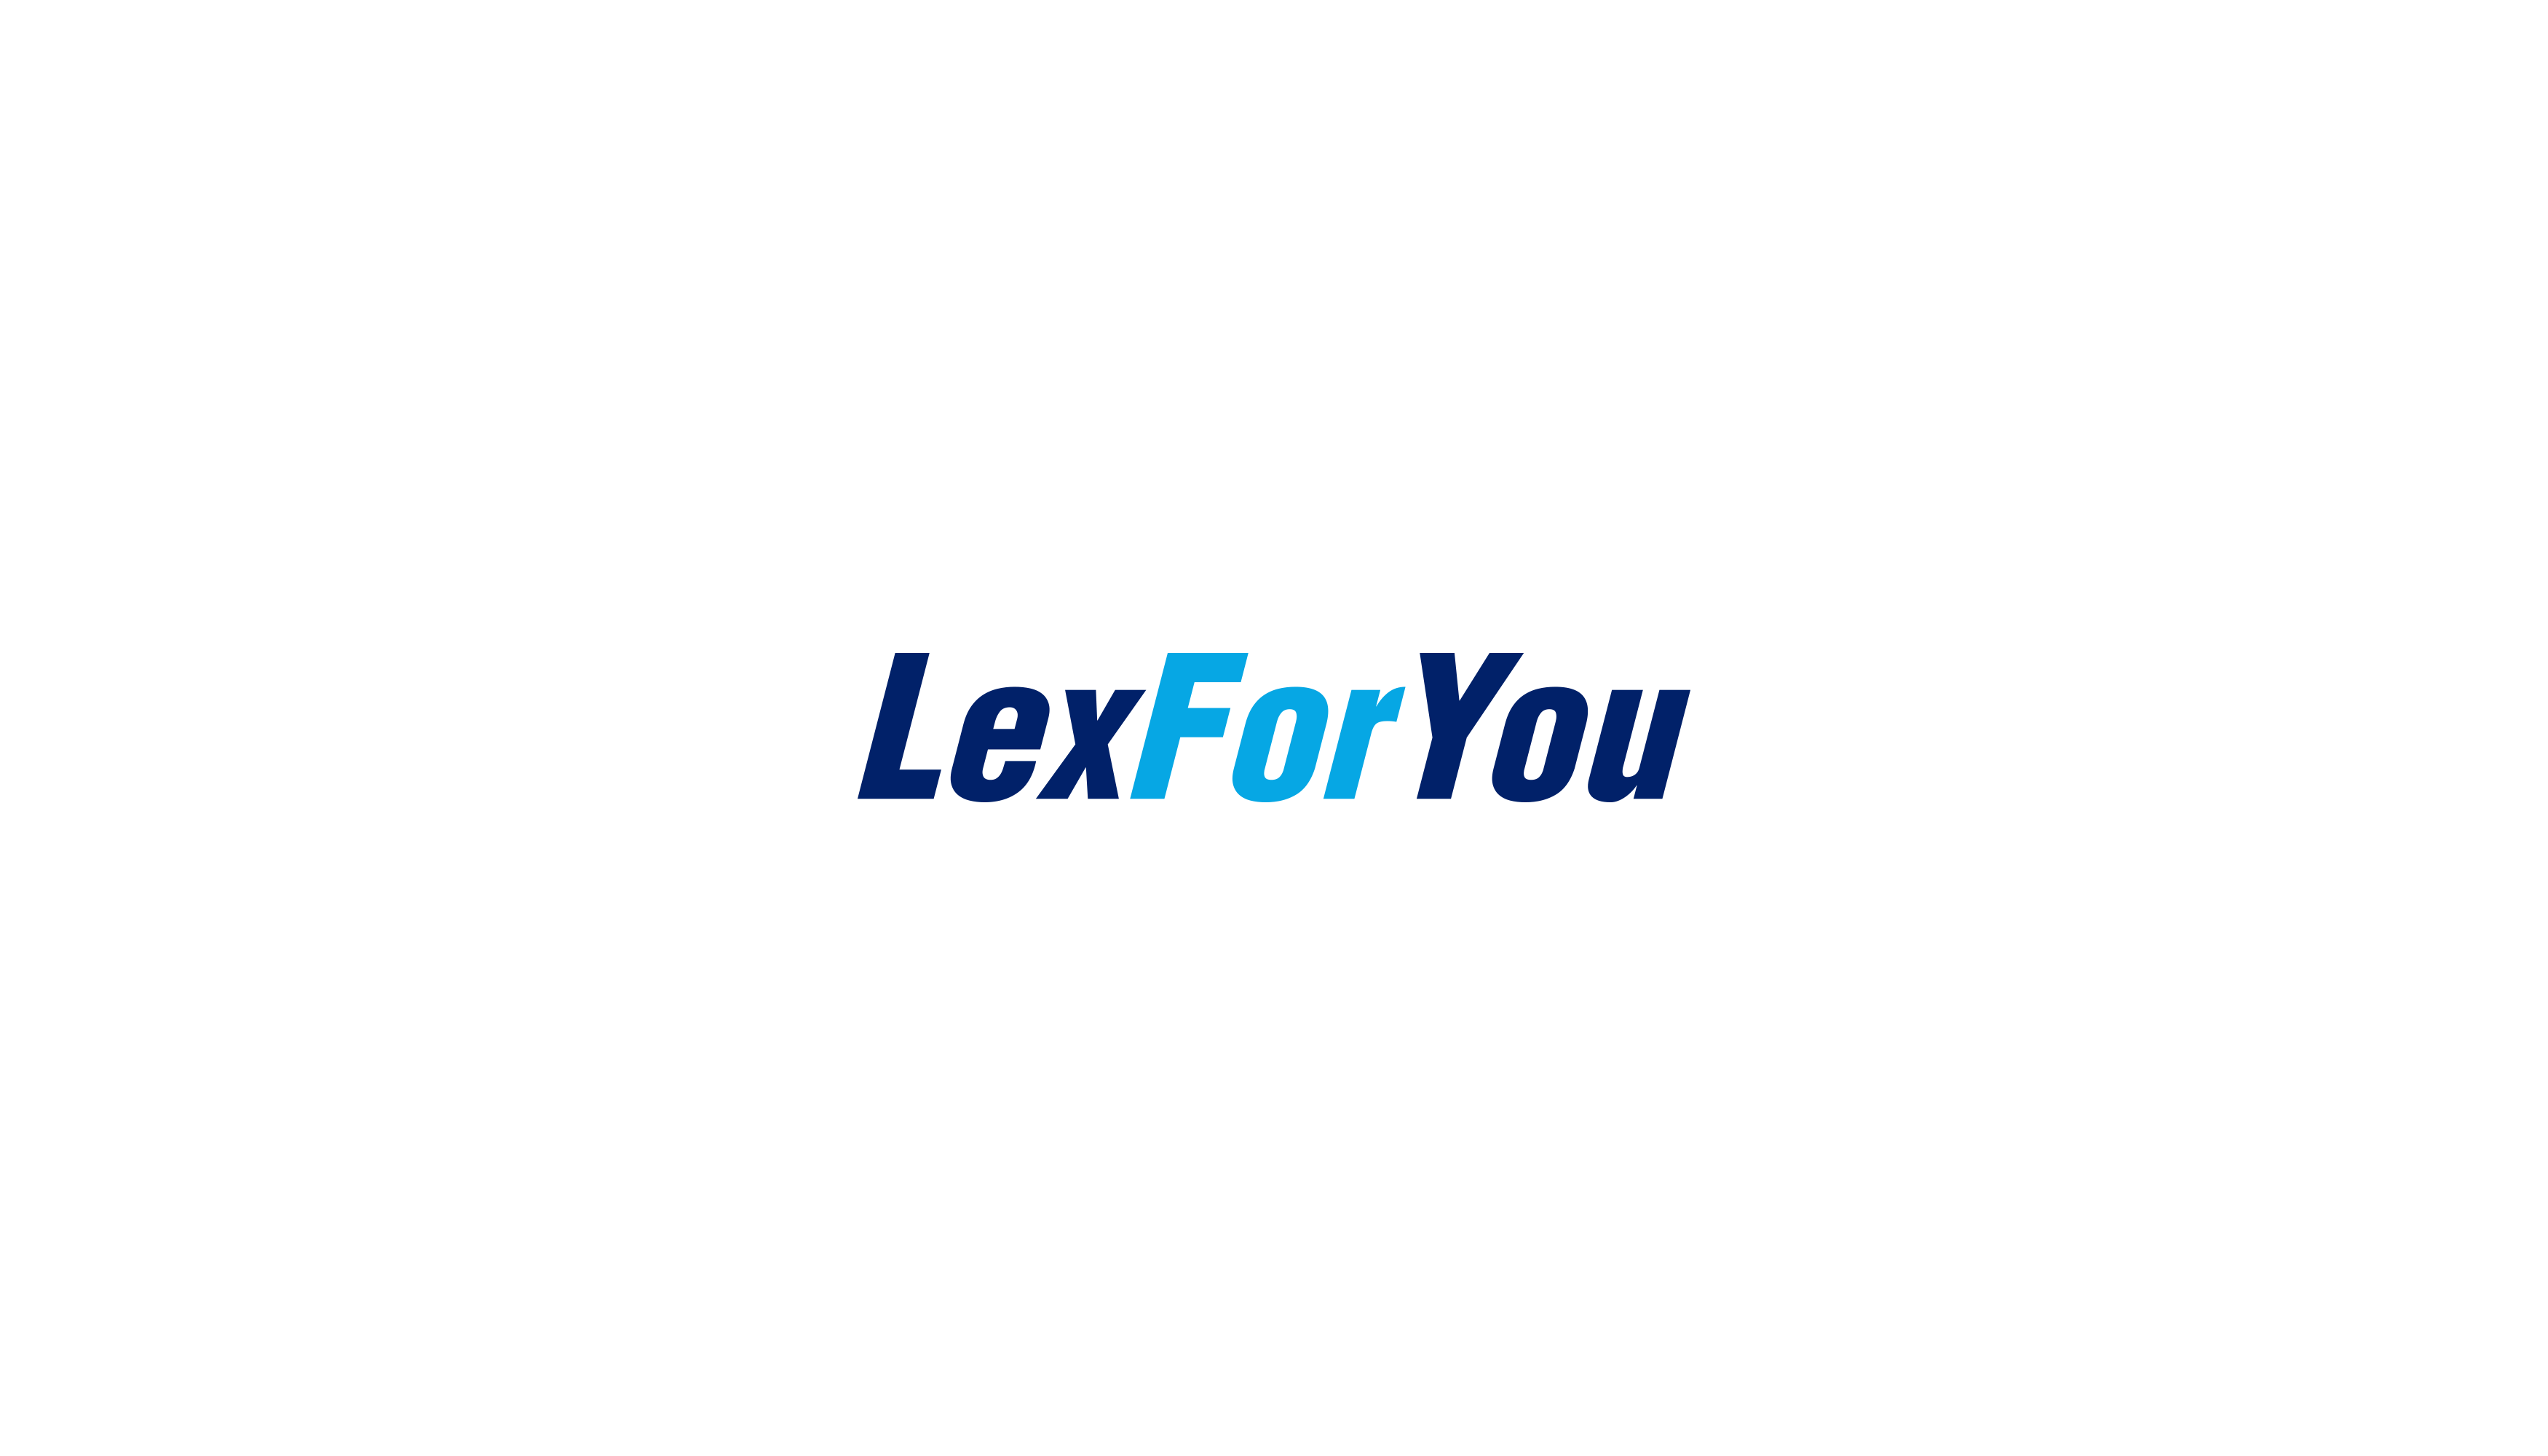 Lex For You Design #6